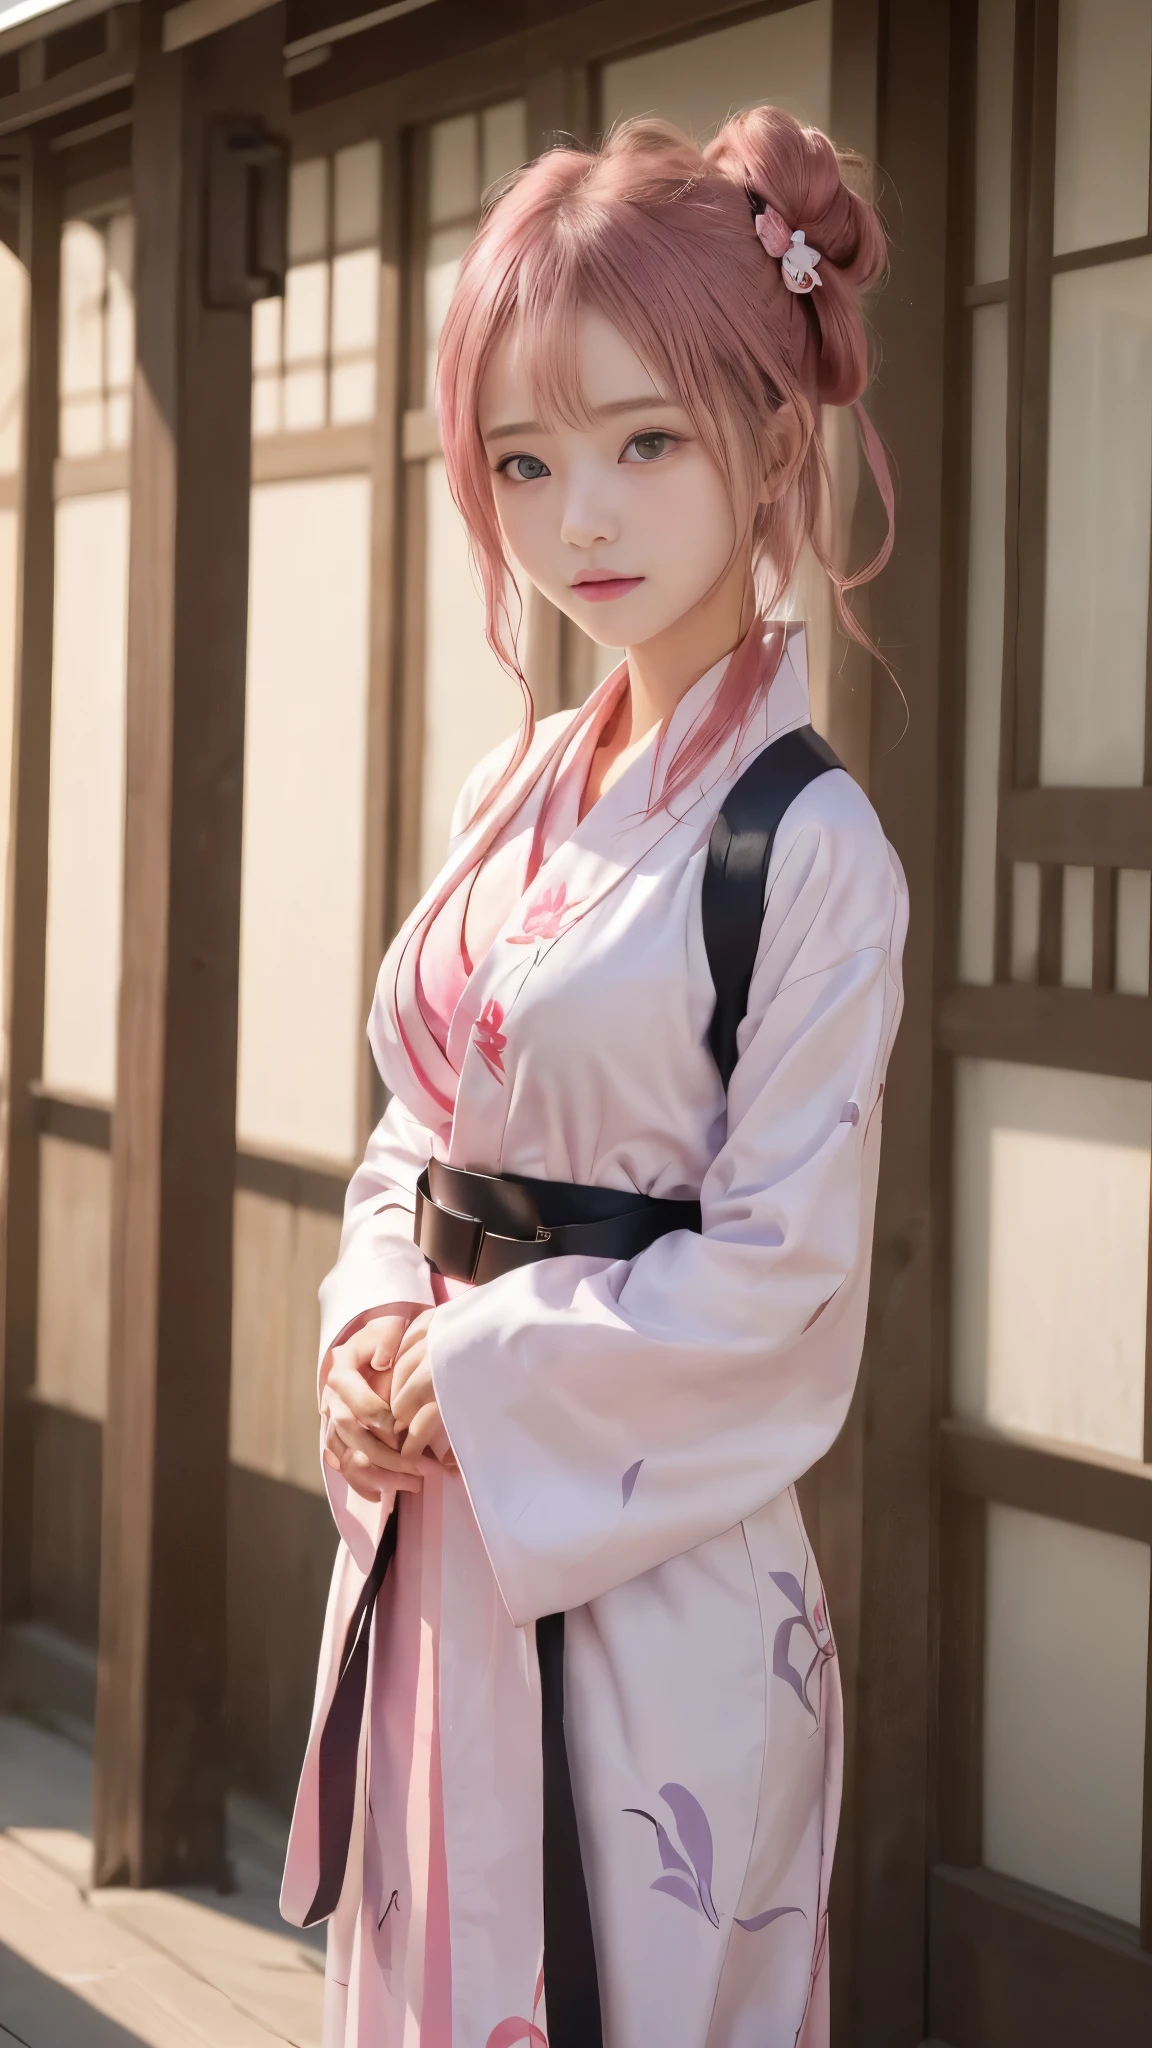 Girl im Kimono standing in front of a building, trägt ein einfaches Gewand, ((Red belt, Eleganter weißer Kimono)), bestes Anime 4k Konachan-Hintergrundbild, im Kimono, Ayaka Genshin Impact, Süße Anime-Mädchen-Bilder, (((inspiriert von Yui Yuigahama))), trägt ein einfaches Gewand, weibliche Protagonistin 👀 :8, Anime-Moe-Kunststil, junges Mädchen, (schöne Brüste), ((höchste Qualität, 8K, Meisterwerk:1.2)), (detaillierte Augen und Gesicht:1.2), (detaillierte Hände:1.3), (perfekte Anatomie:1.3), (15 Jahre altes schönes Mädchen, Babygesicht:1.3), (Schlanke Körperlinie), (Kleine und schlanke Figur), ((Frisur mit seitlichem Dutt, schöne rosa Haare)), kurzes Haar, (den Betrachter anstarren:1.2)